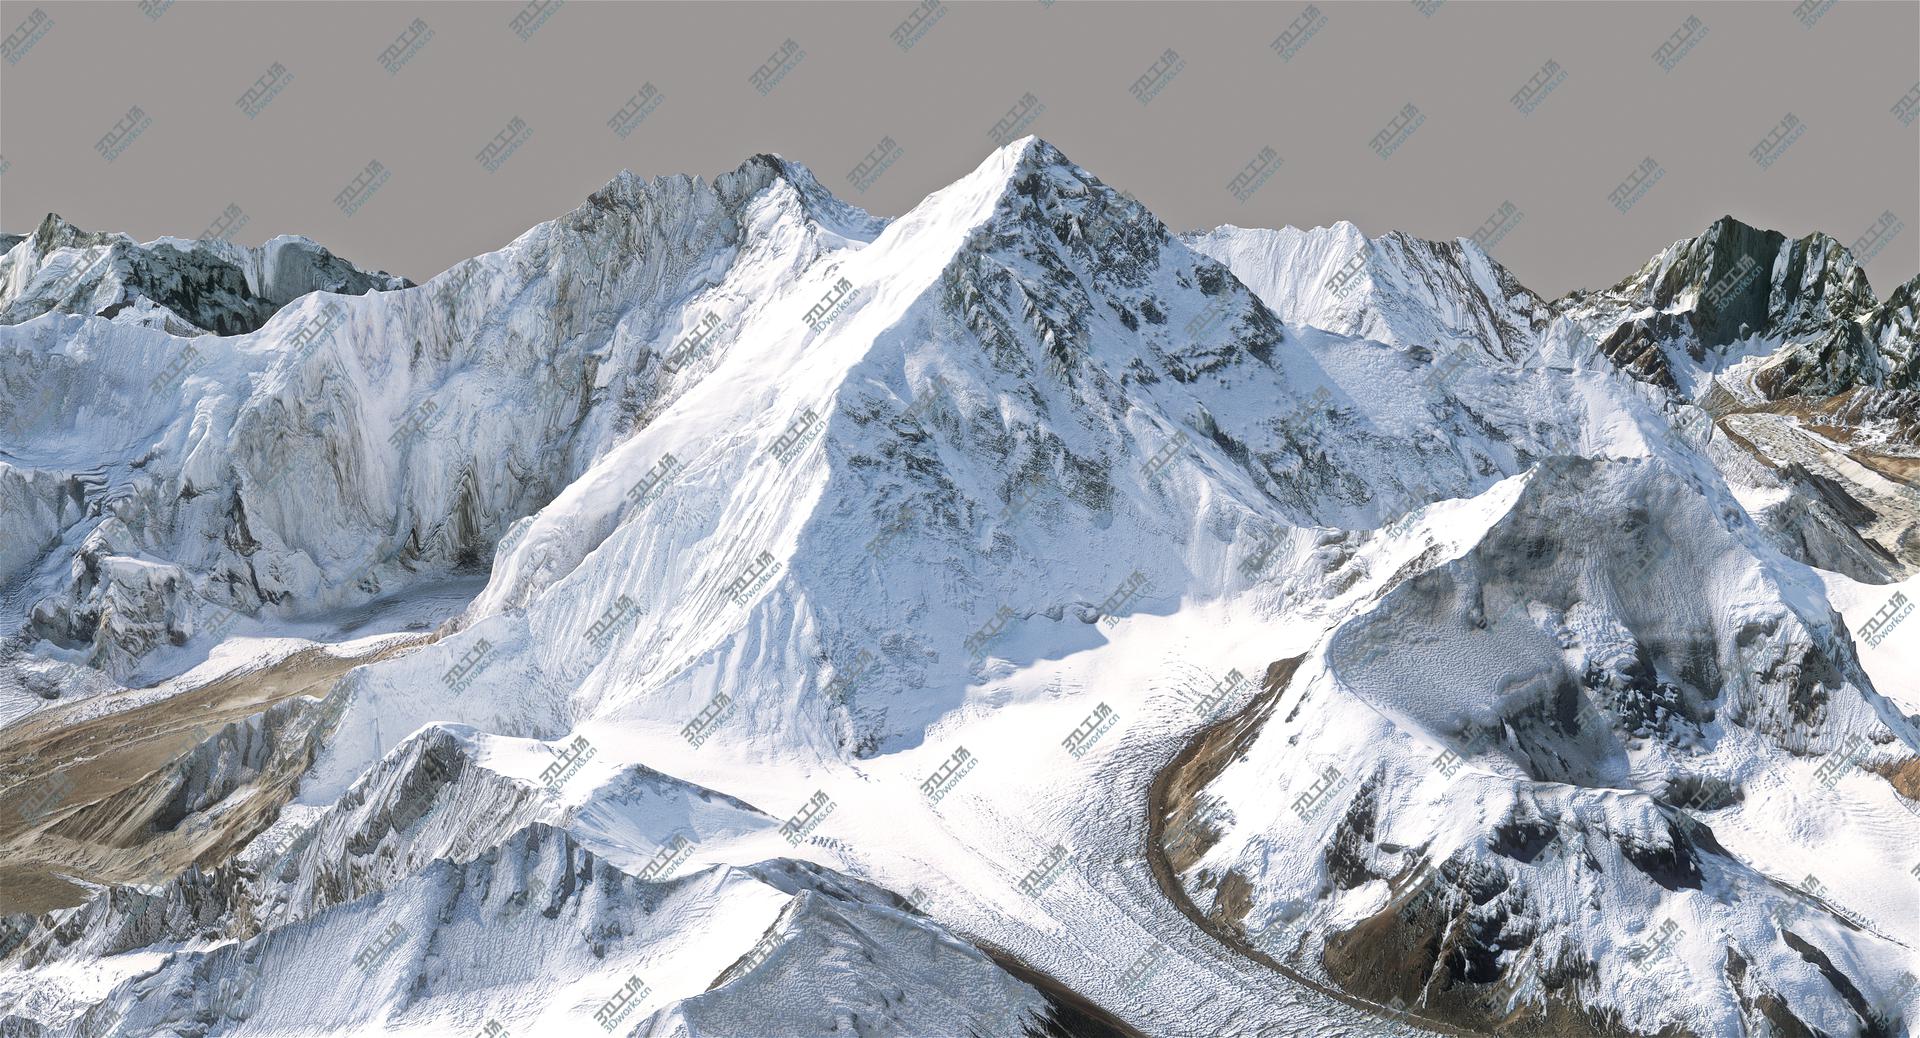 images/goods_img/20210319/Everest 8m Resolution model/5.jpg